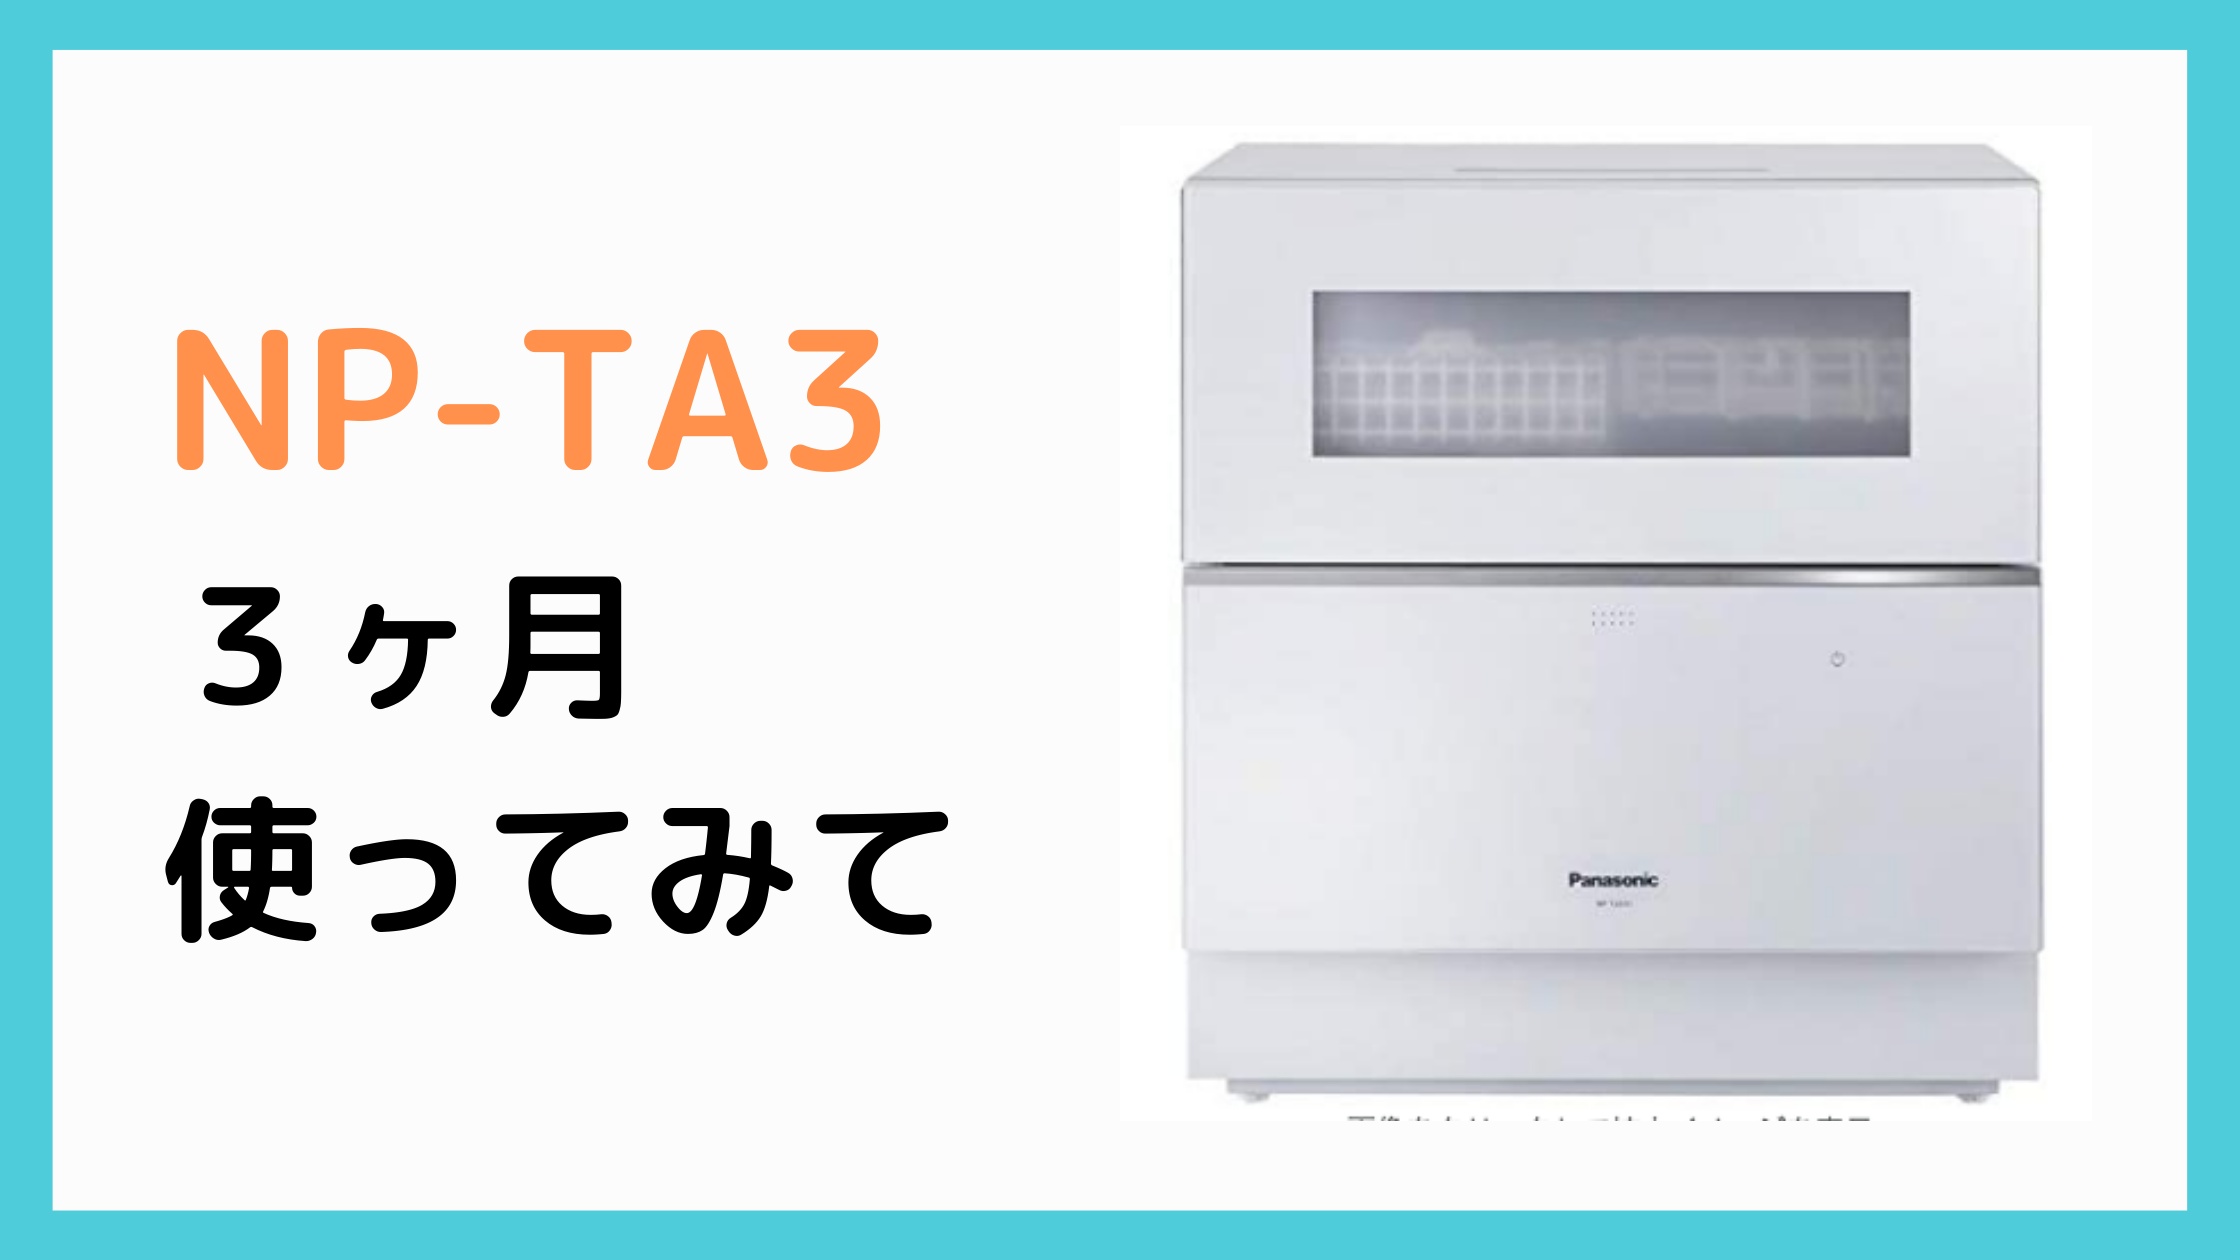 食洗機「Panasonic NP-TA3」を3ヶ月使ってみた感想 | YUYA / 妻のポイント爆上げブログ